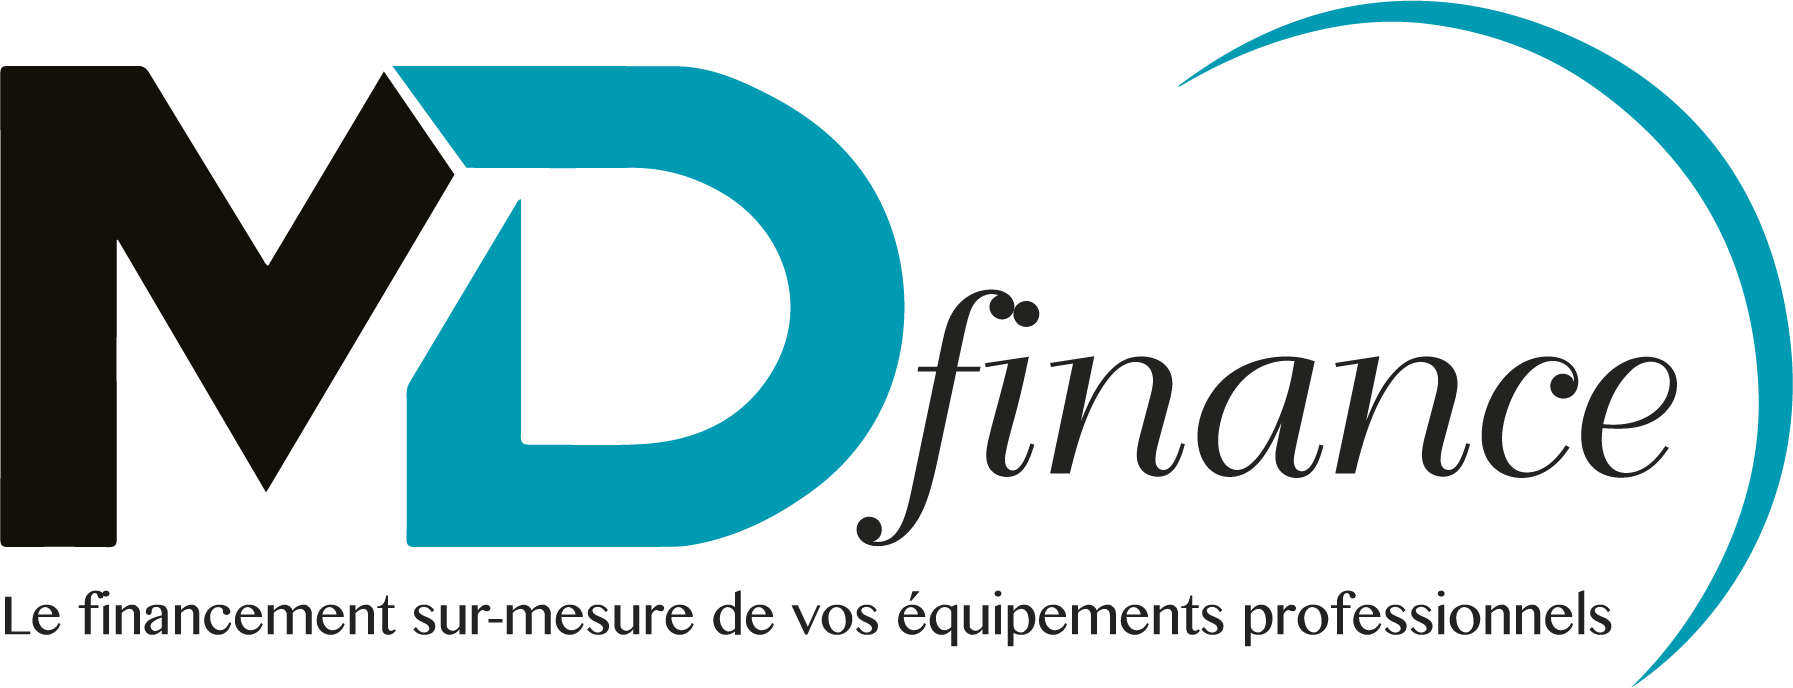 Logo MDFinance